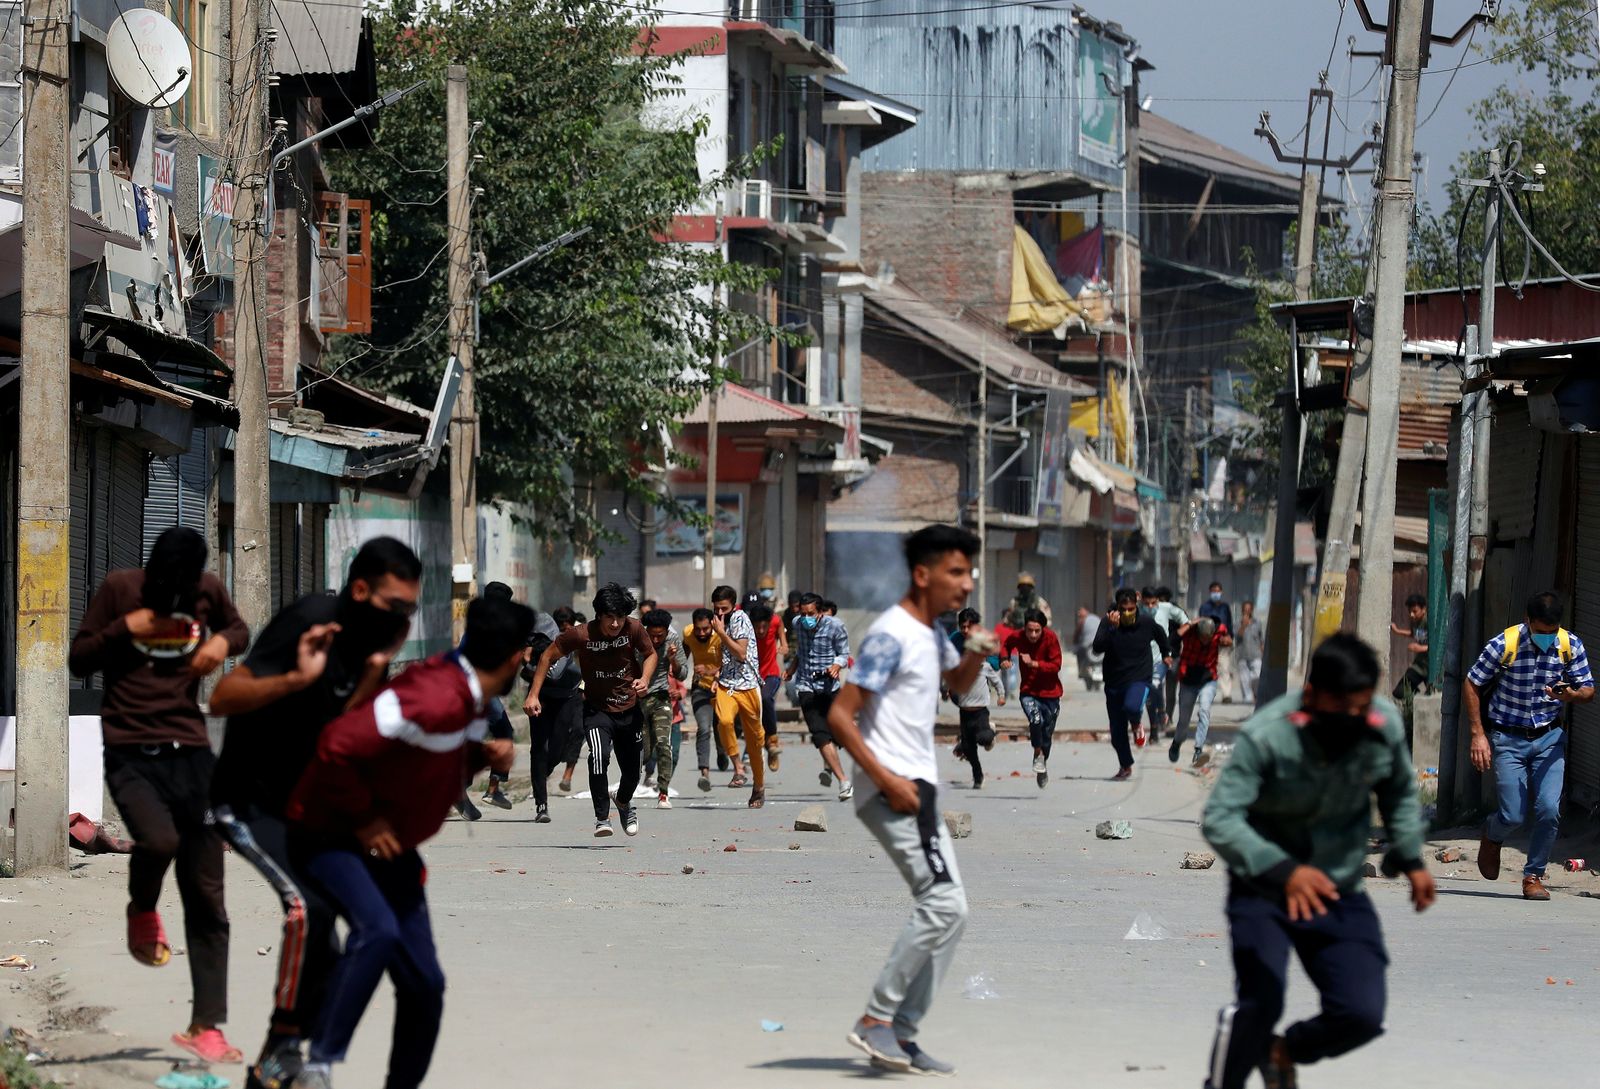 الشرطة الهندية تطارد المتظاهرين الكشميريين خلال احتجاج بعد معركة بالأسلحة النارية بين مسلحين مشتبه بهم وقوات الأمن الهندية في سريناغار، 17 سبتمبر، 2020 - REUTERS